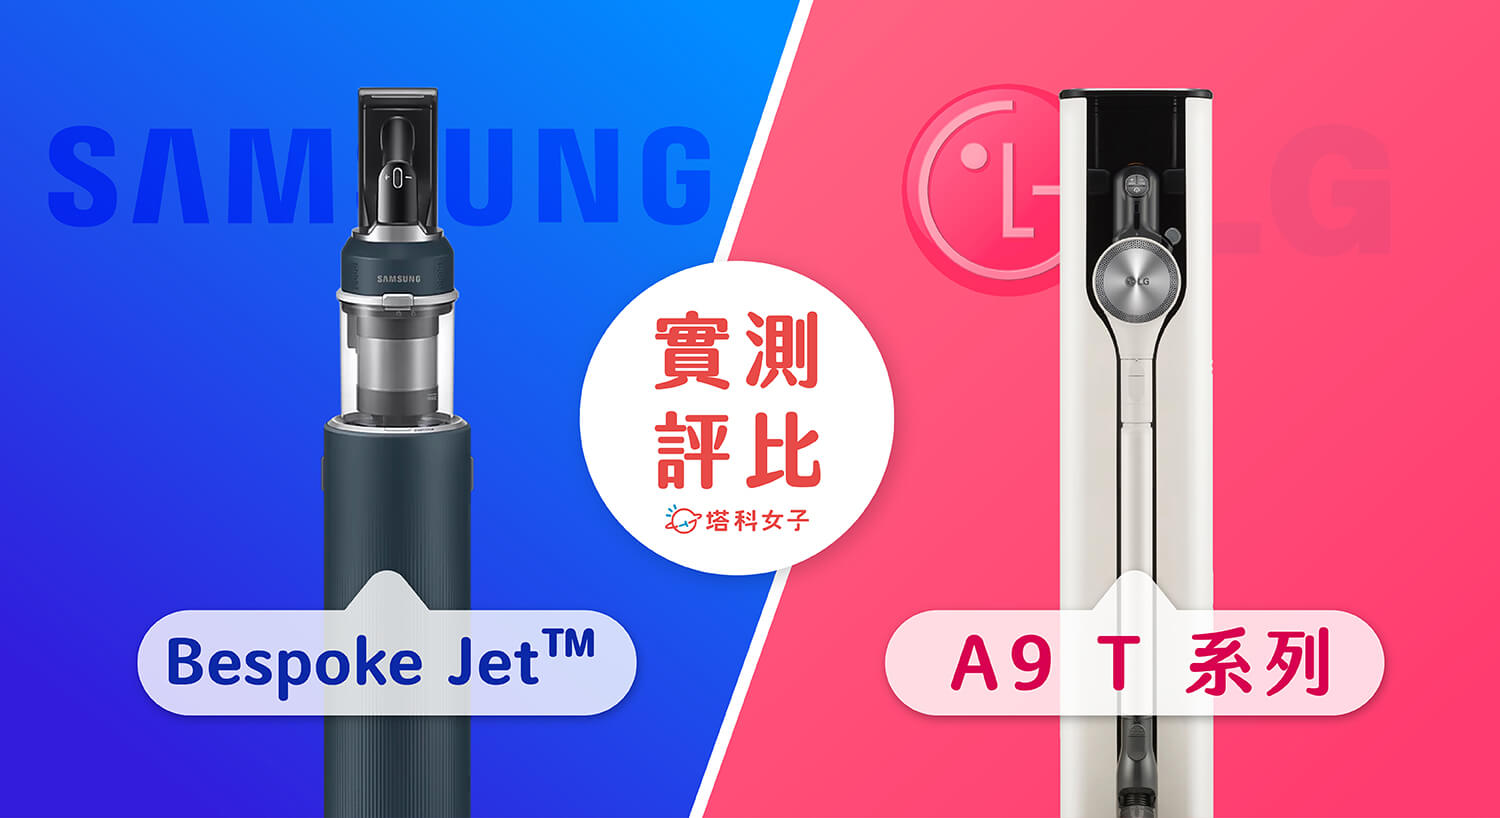 【實測比較】Samsung Bespoke Jet™ 與 LG A9 T系列濕拖無線吸塵器